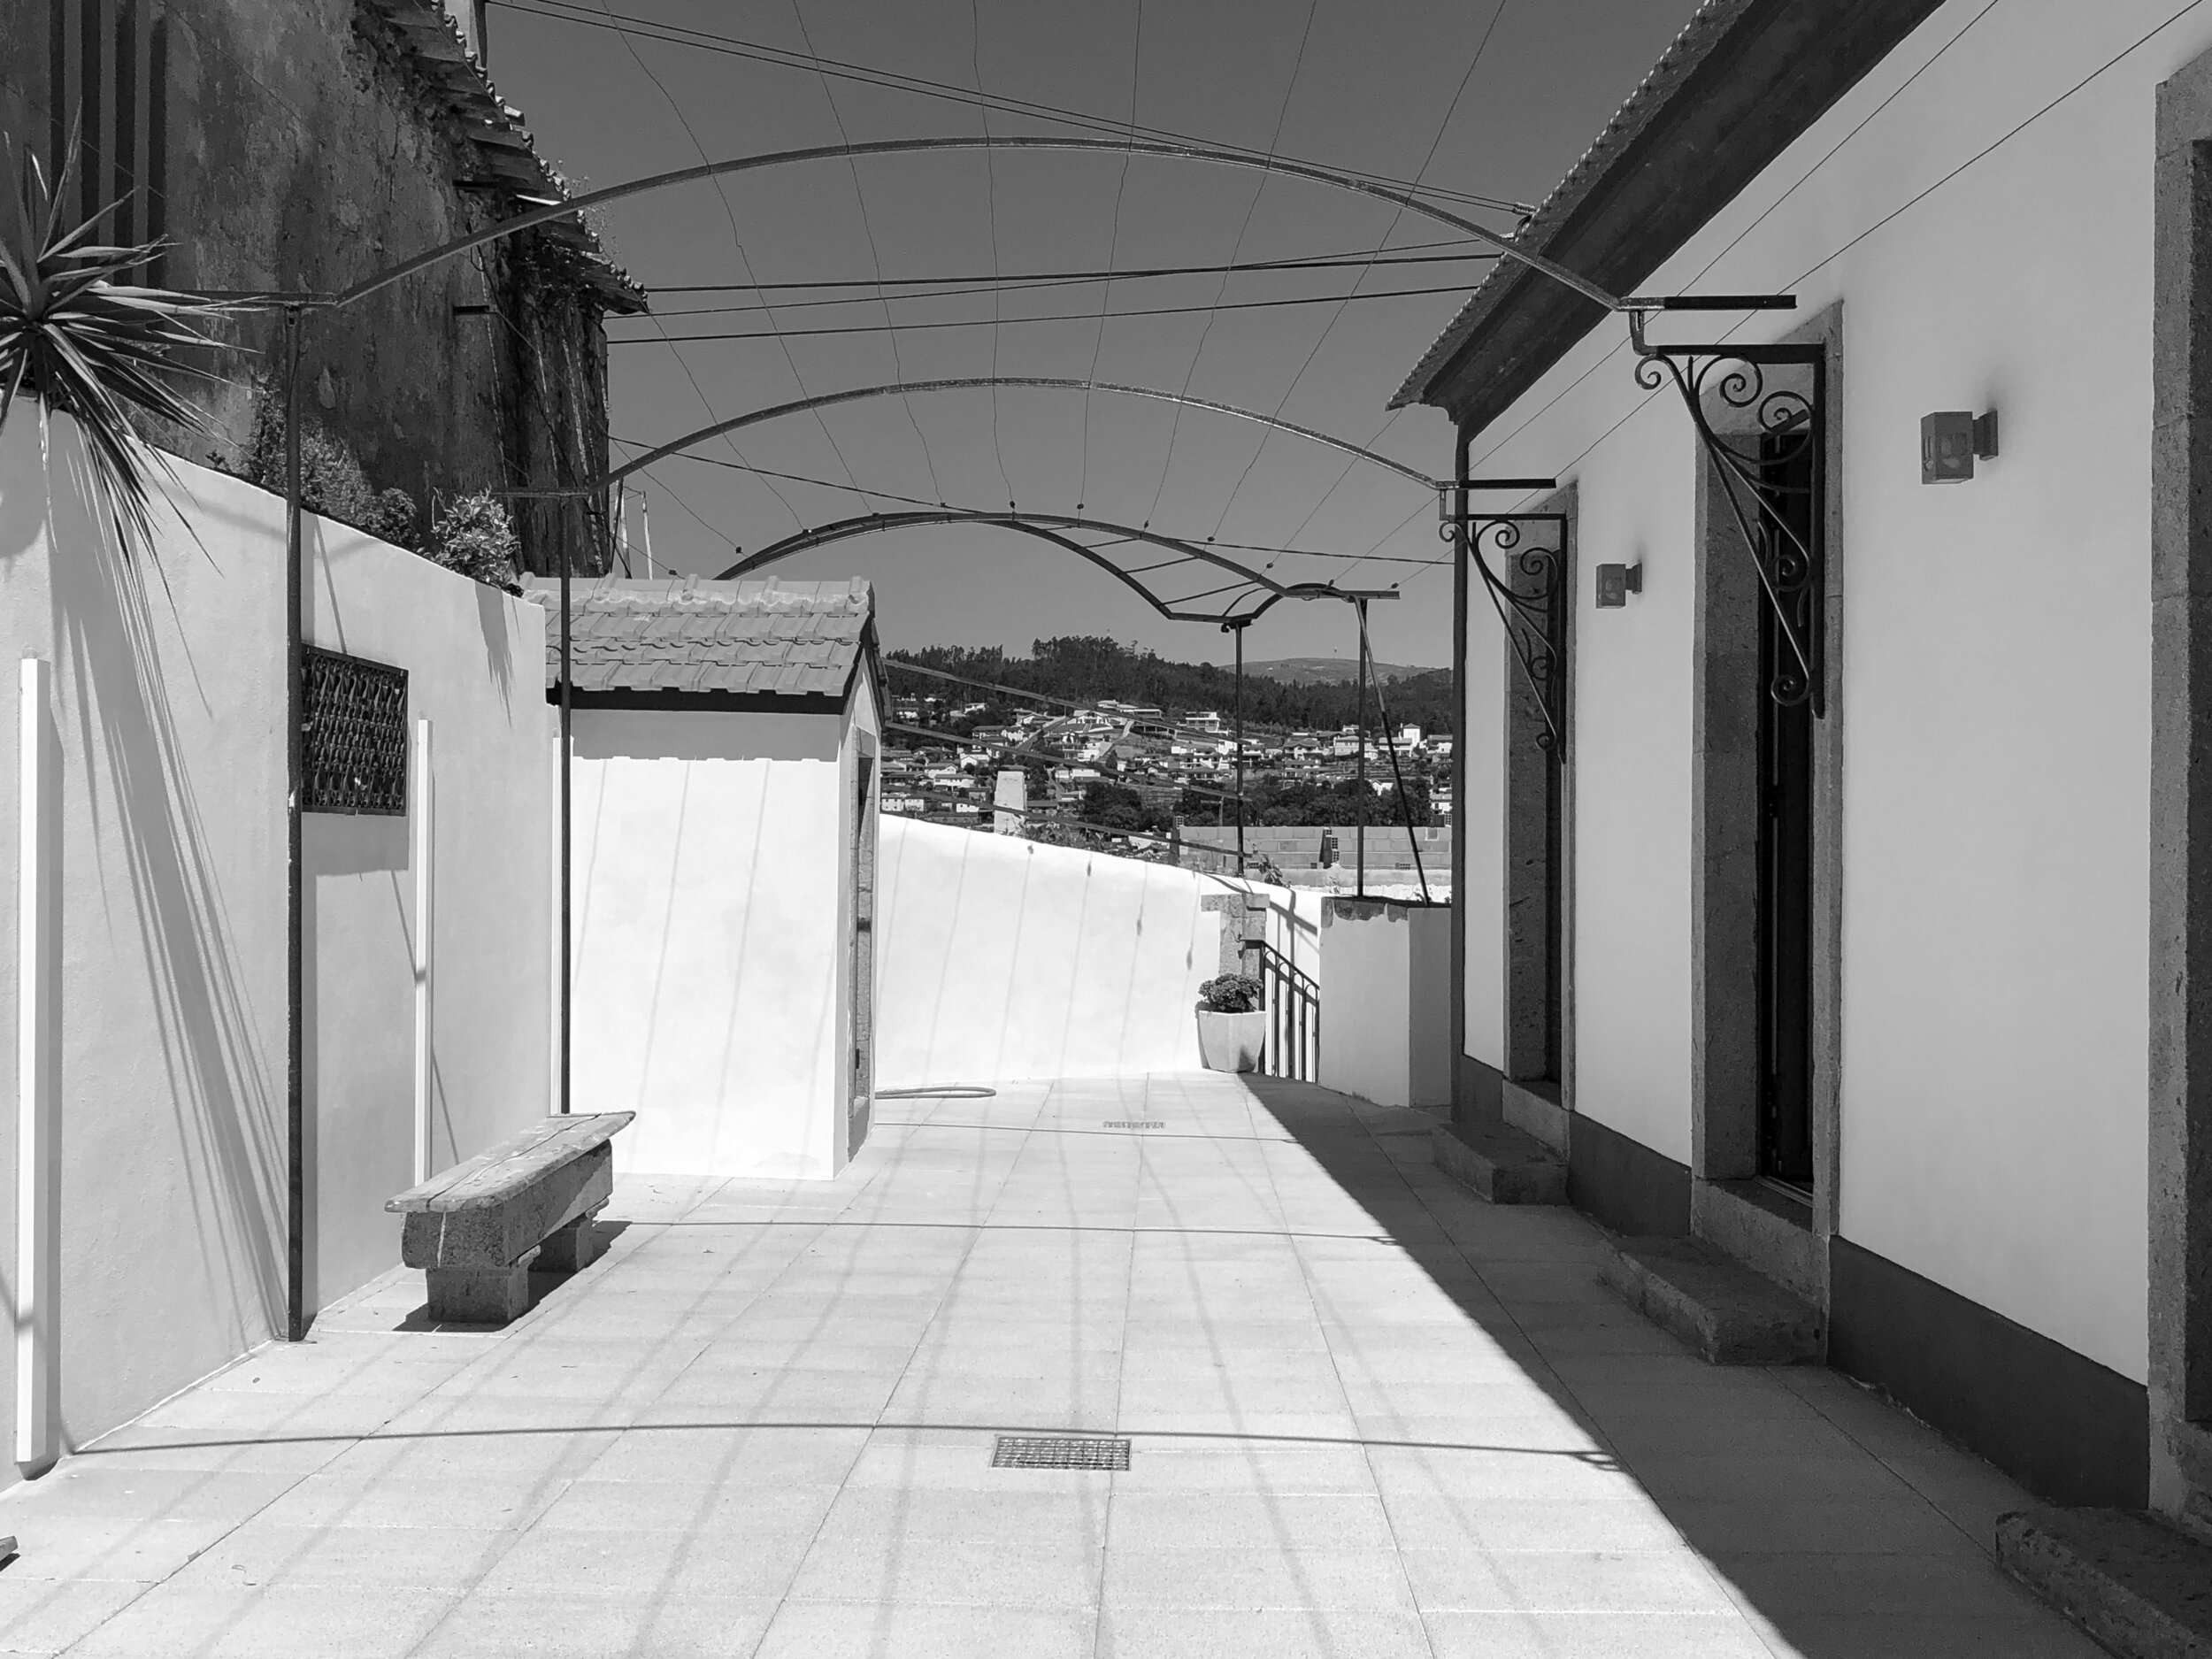 Moradia Coelhosa - eva atelier - evolutionary acrchitecture - vale de cambra - remodelação - arquitectura (2).jpg